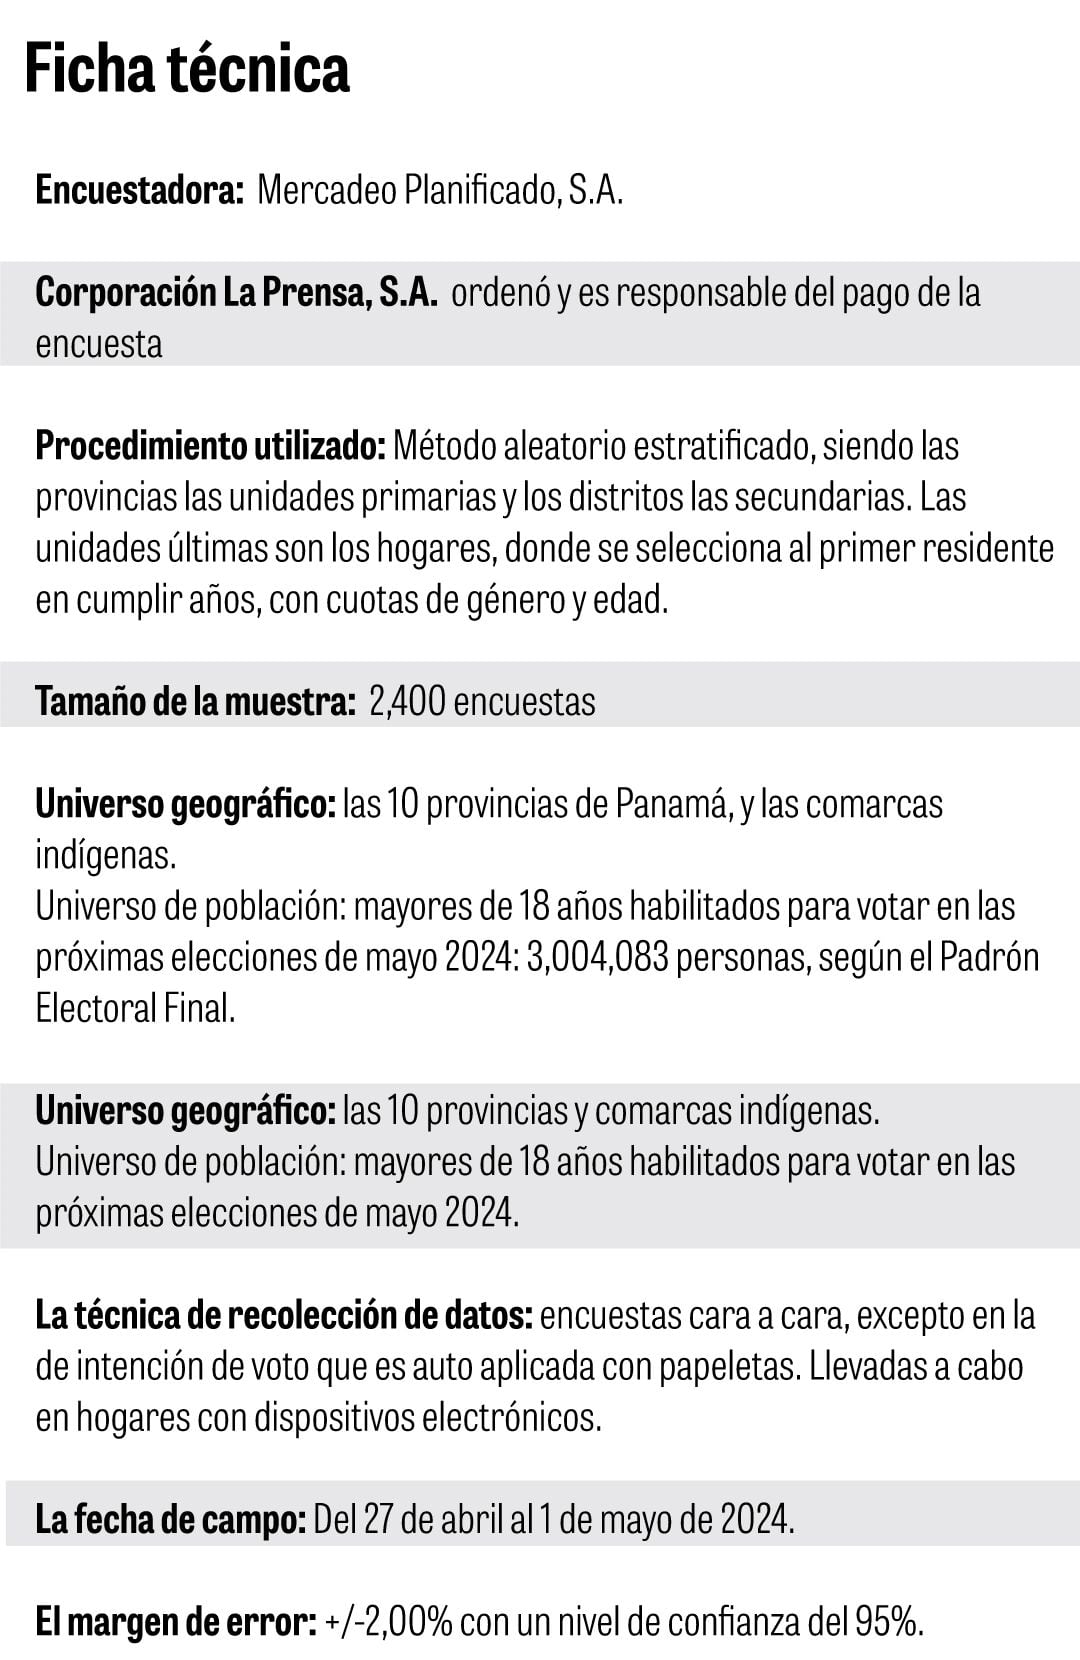 Ficha técnica de la encuesta de Mercadeo Planificad, S.A. para el diario La Prensa.